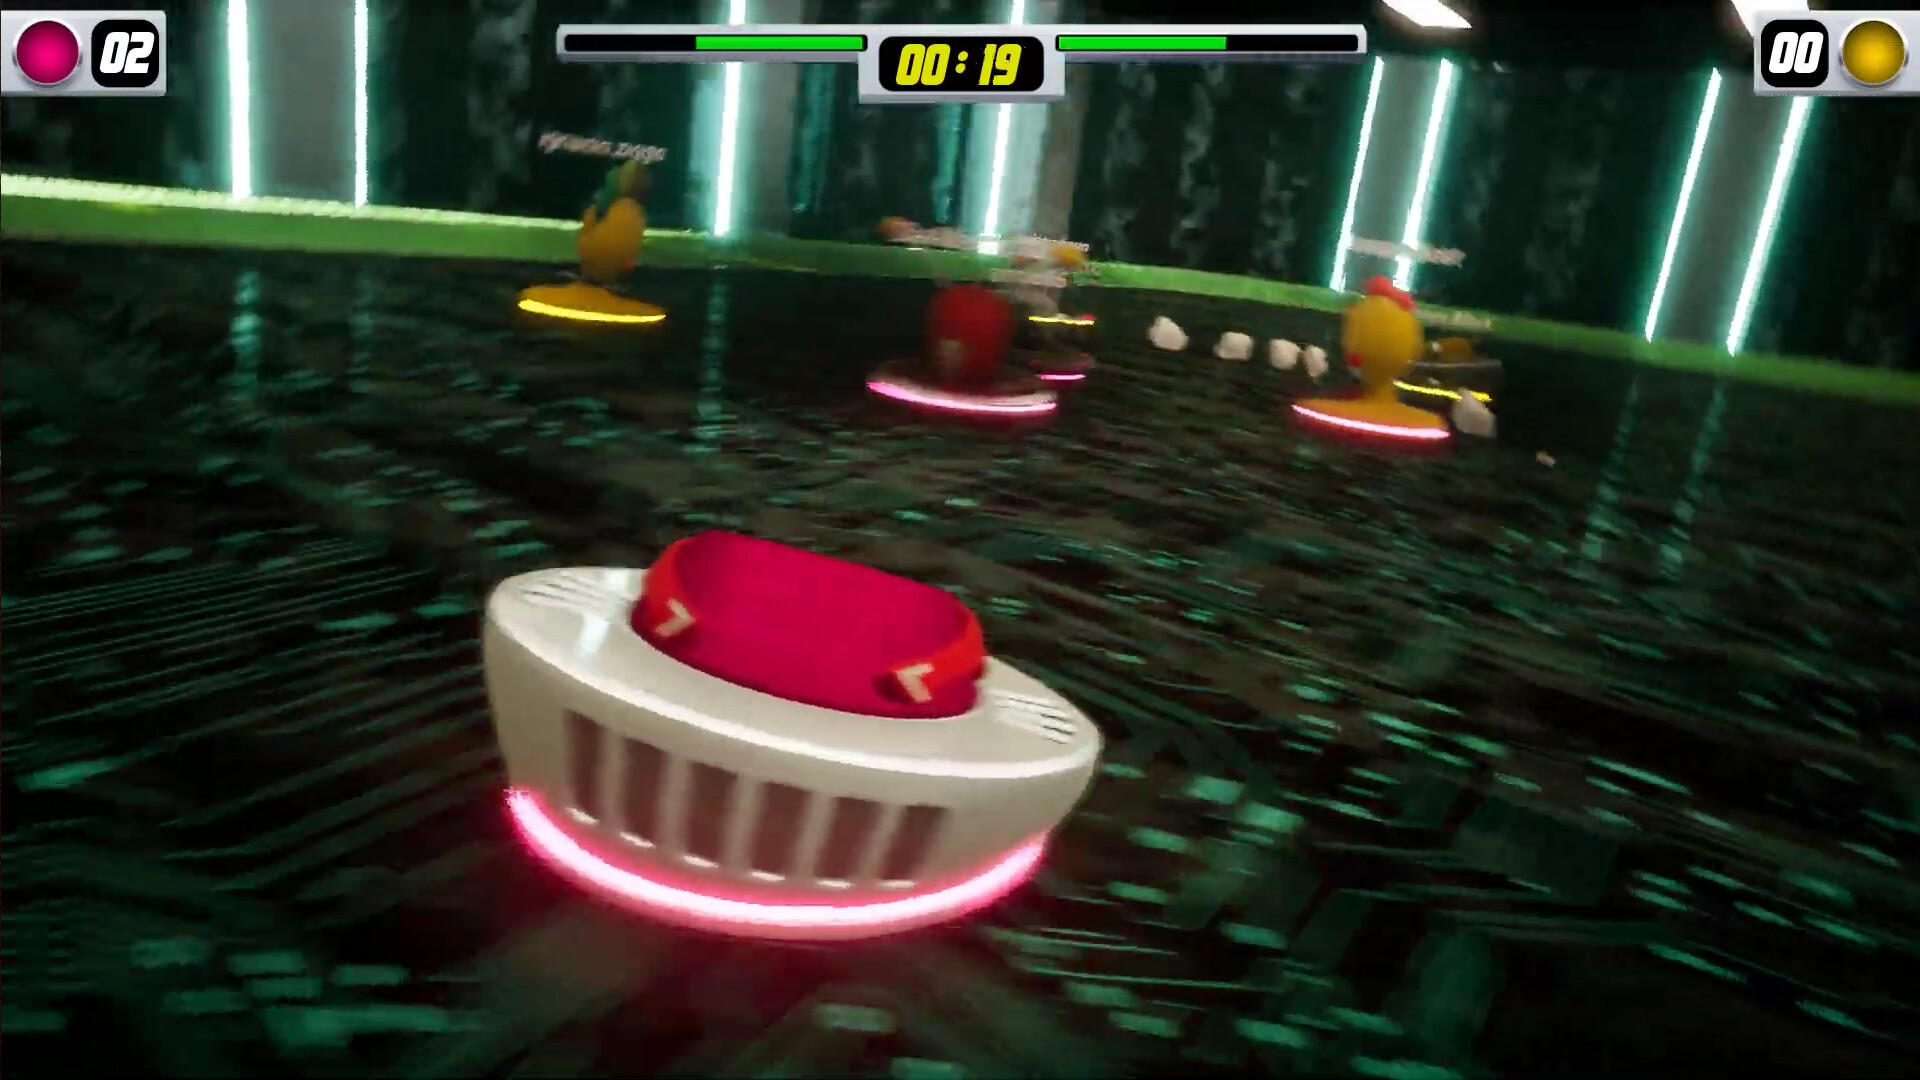 Screenshot of Roomballs